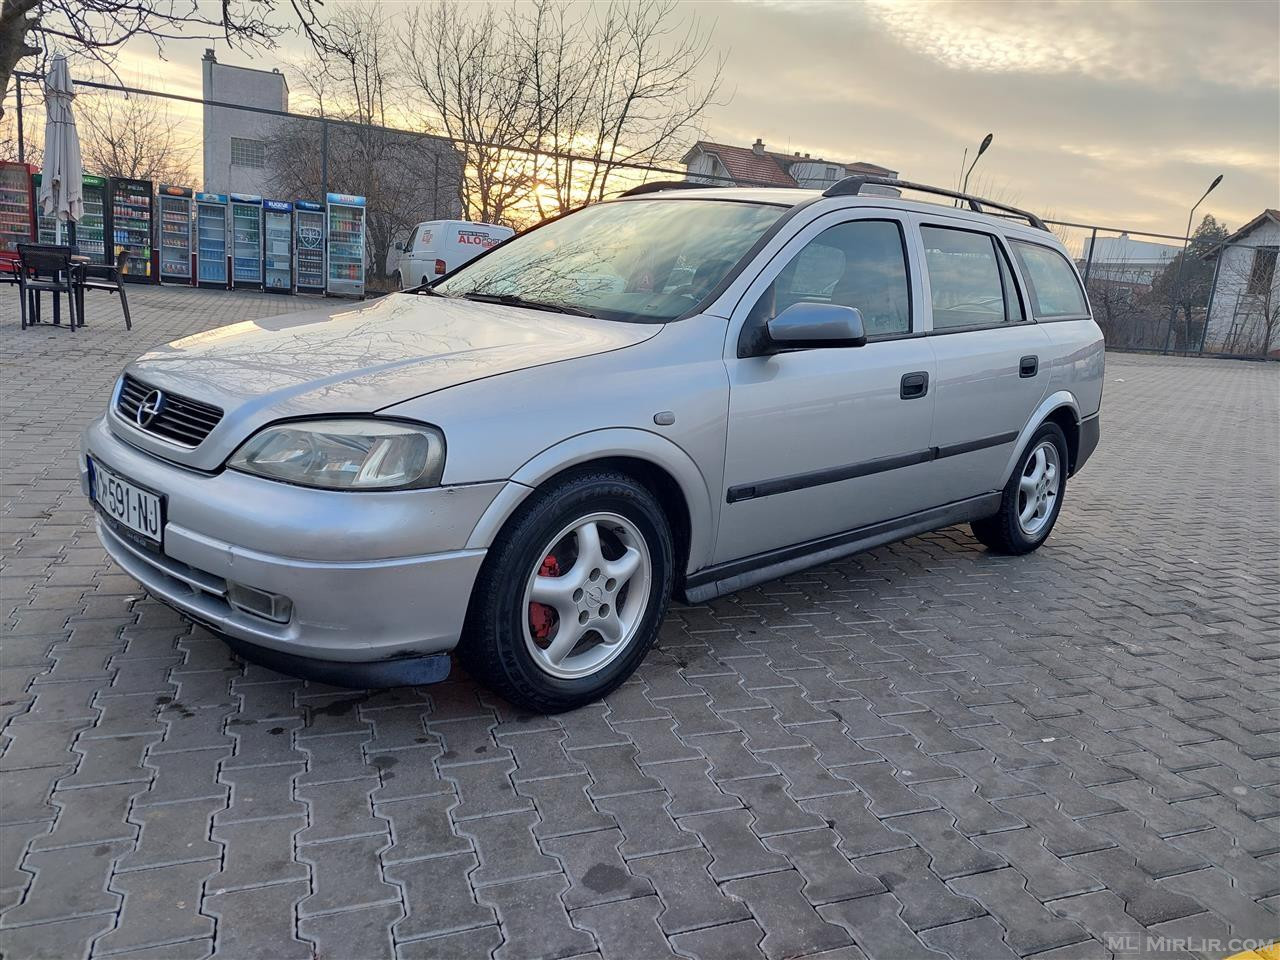 Opel astra G 2.0dti 2000 rks 